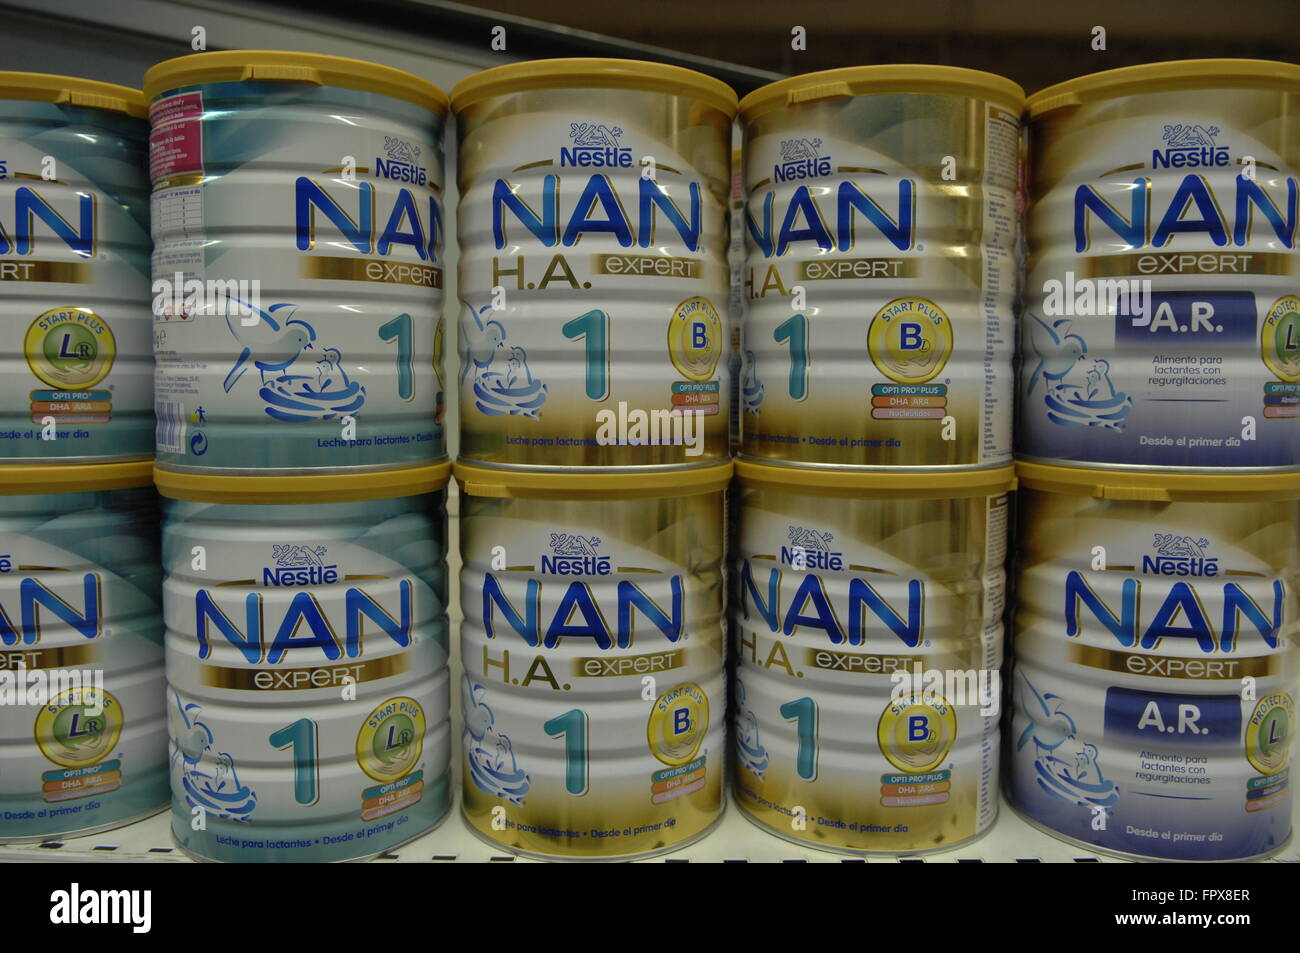 Nestle Nan Babynahrung auf dem Display in einem Carrefour-Geschäft  Stockfotografie - Alamy